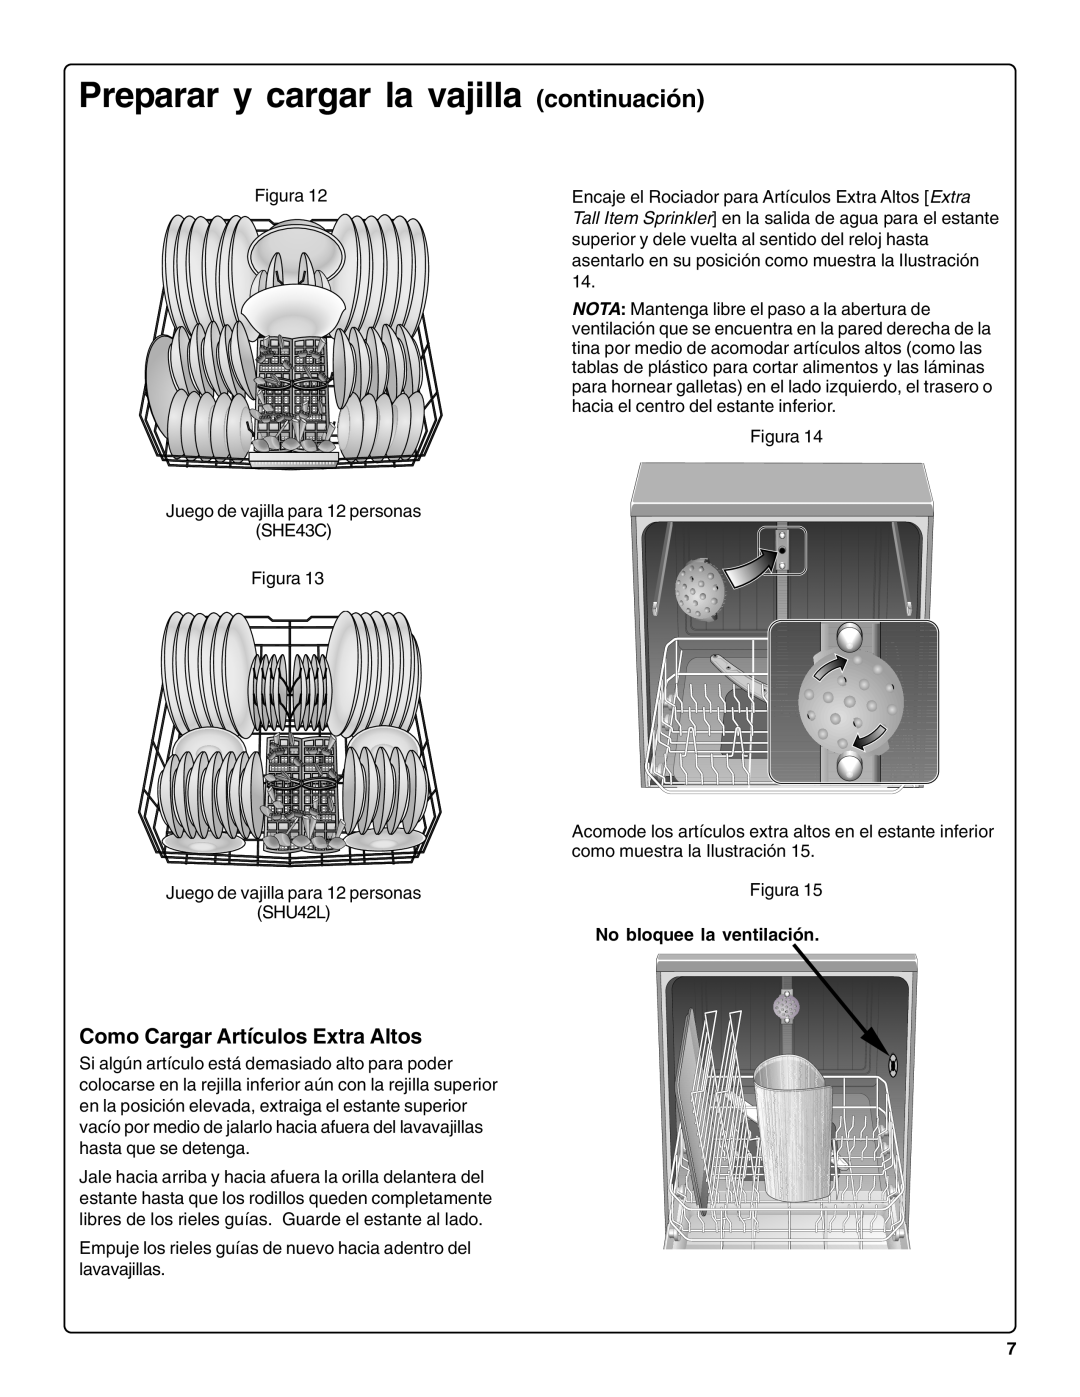 Bosch Appliances sHe43C Como Cargar Artículos Extra Altos, Preparar y cargar la vajilla continuación 